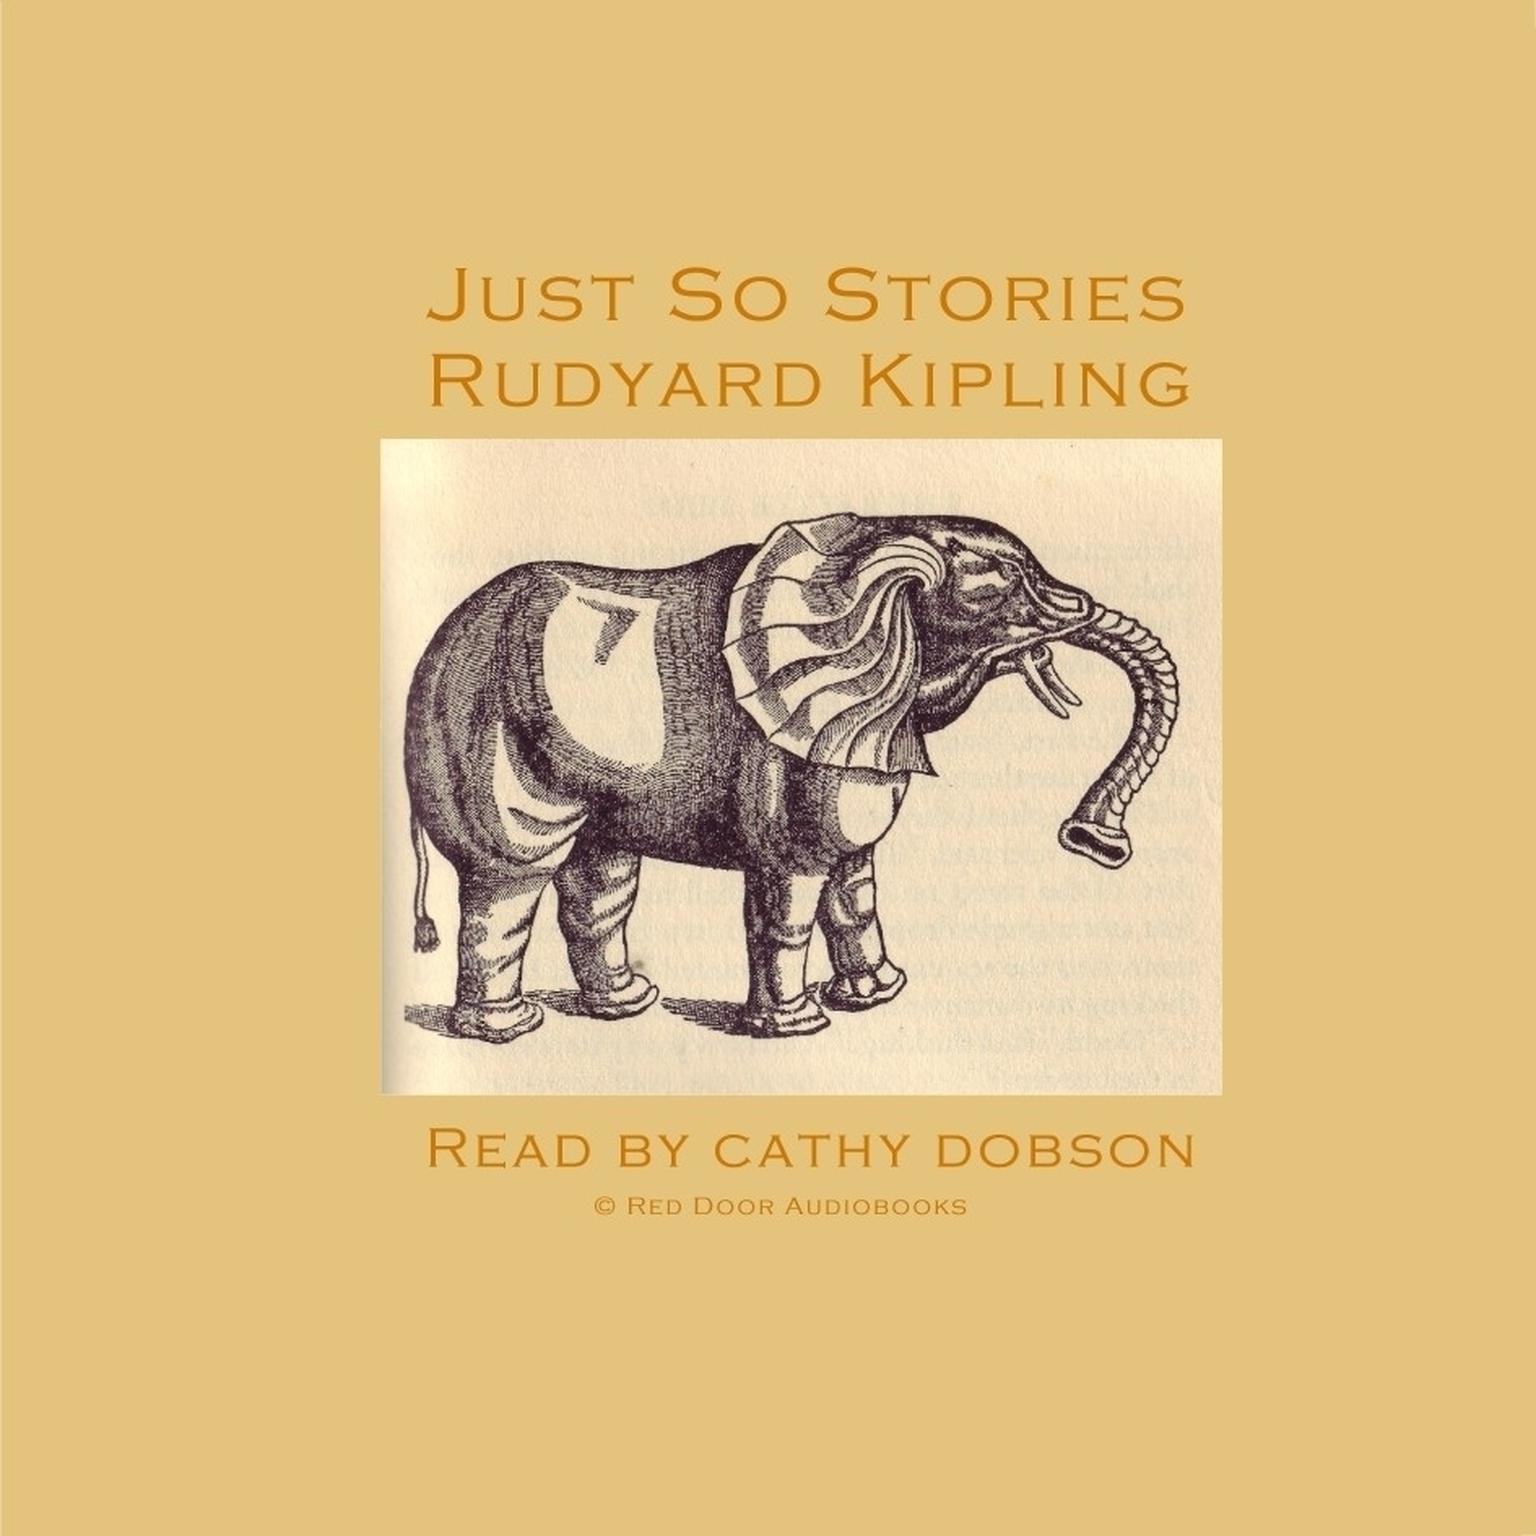 Just So Stories Audiobook, by Rudyard Kipling